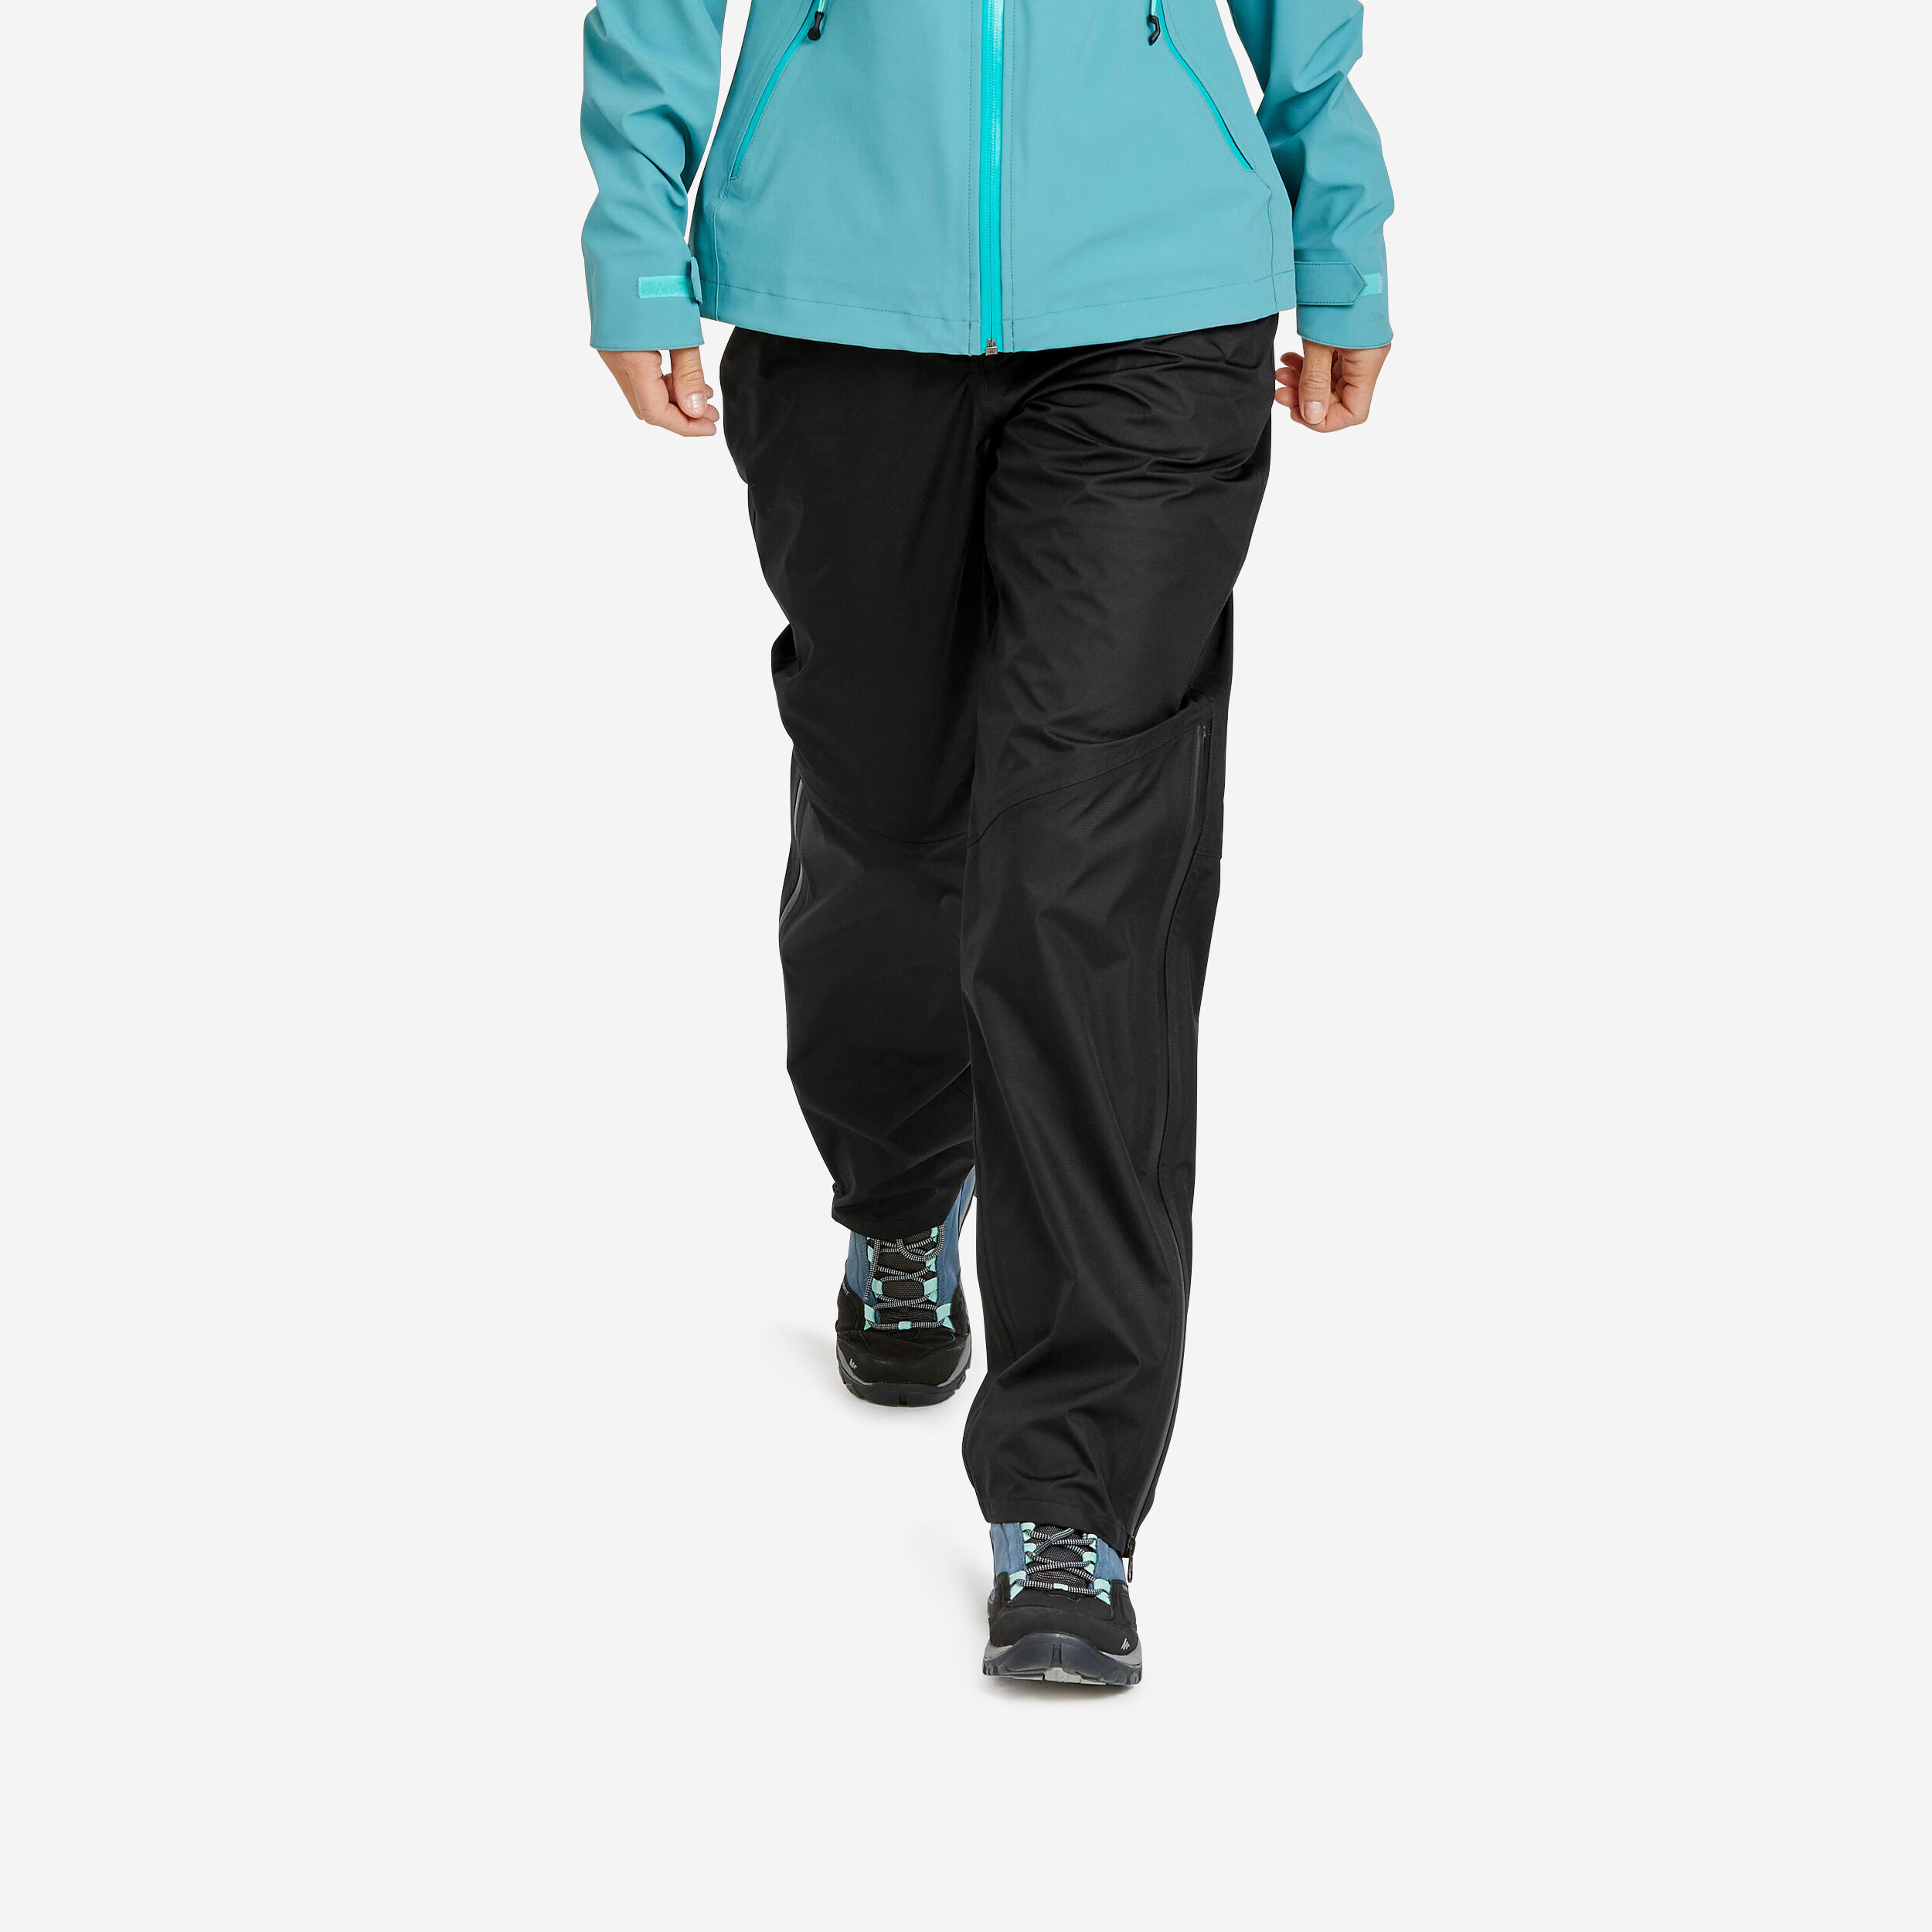 Women Sweater Full-Zip Fleece for Hiking MH100 Blue